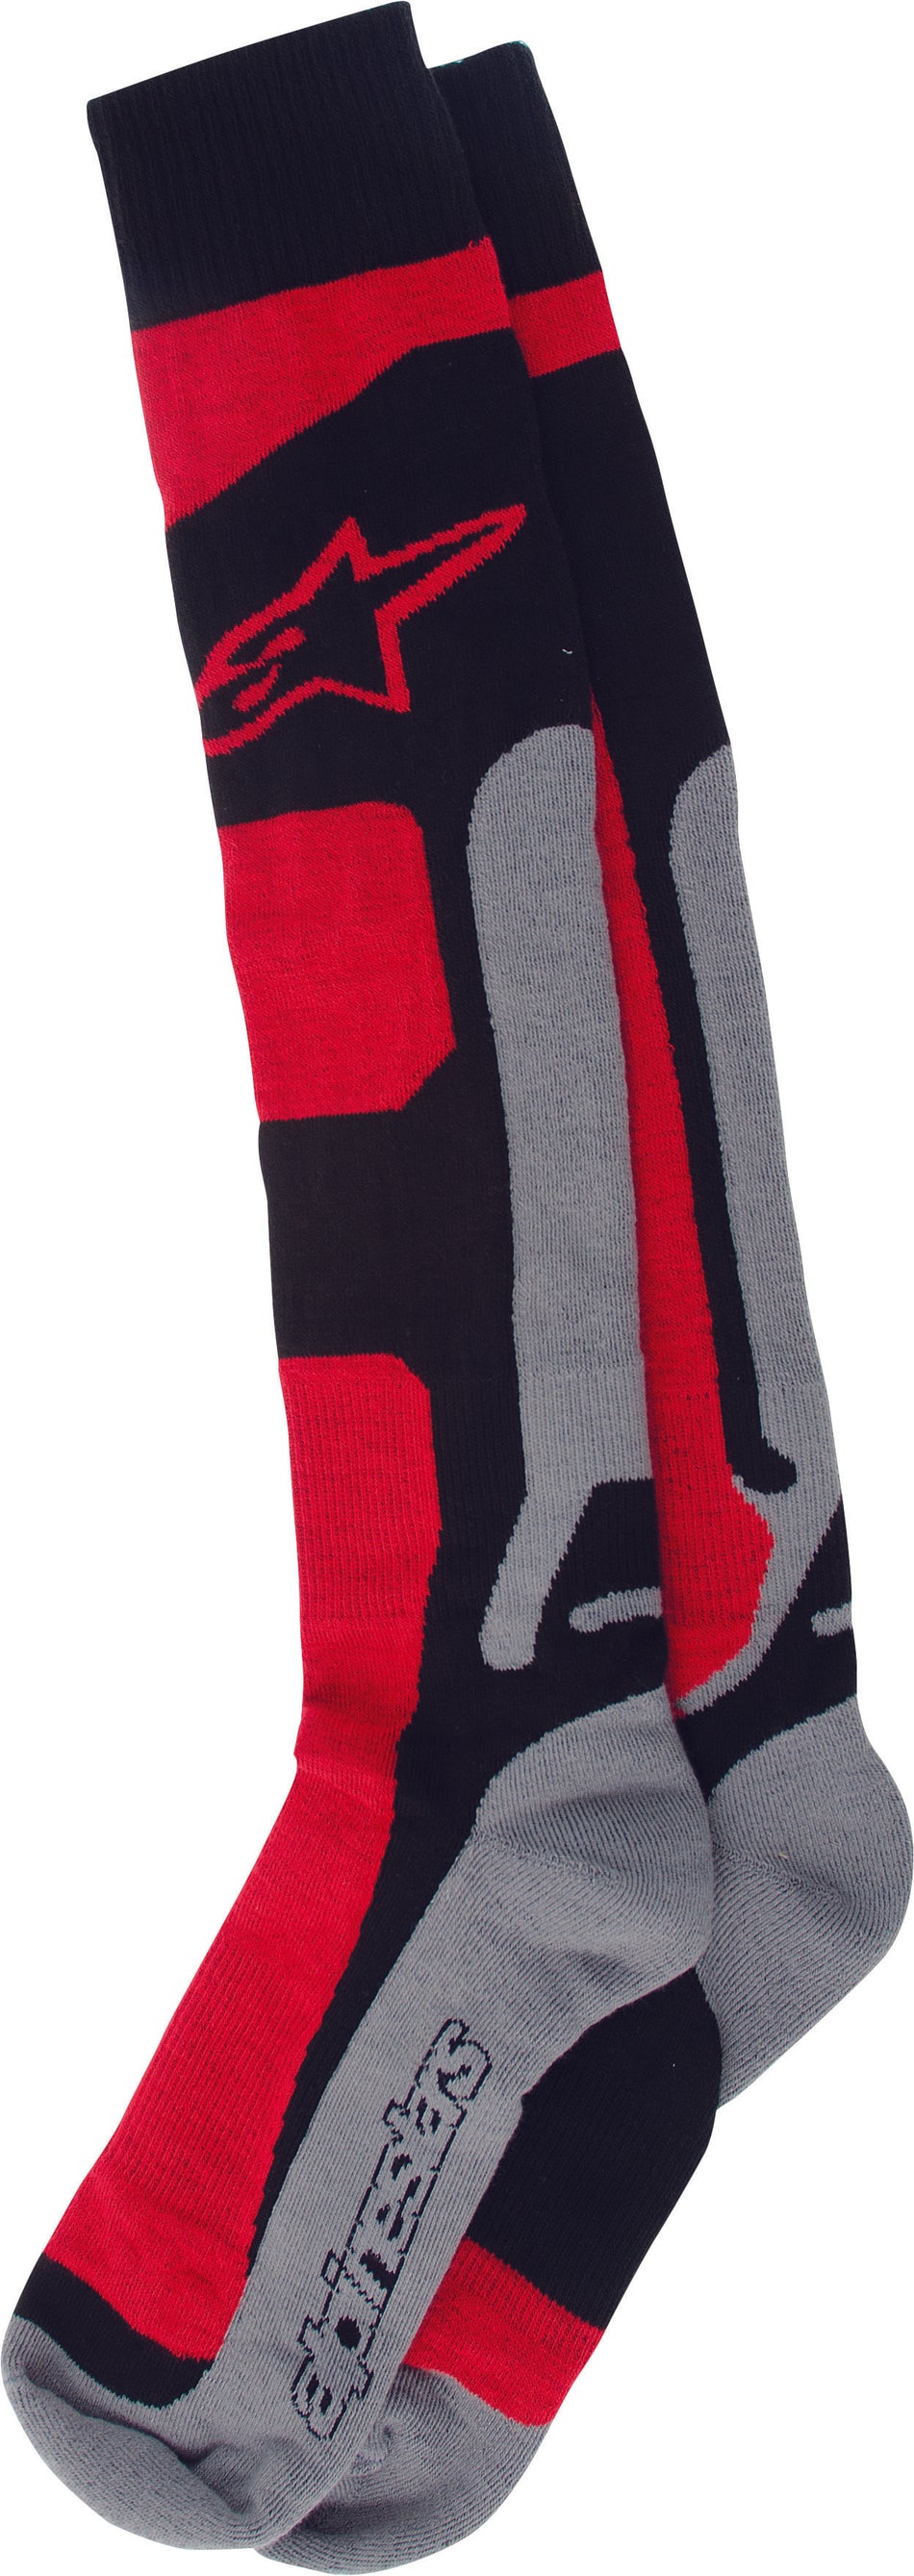 ALPINESTARS Tech Coolmax Socks Red Lg-2x 4702114-311-L/XL